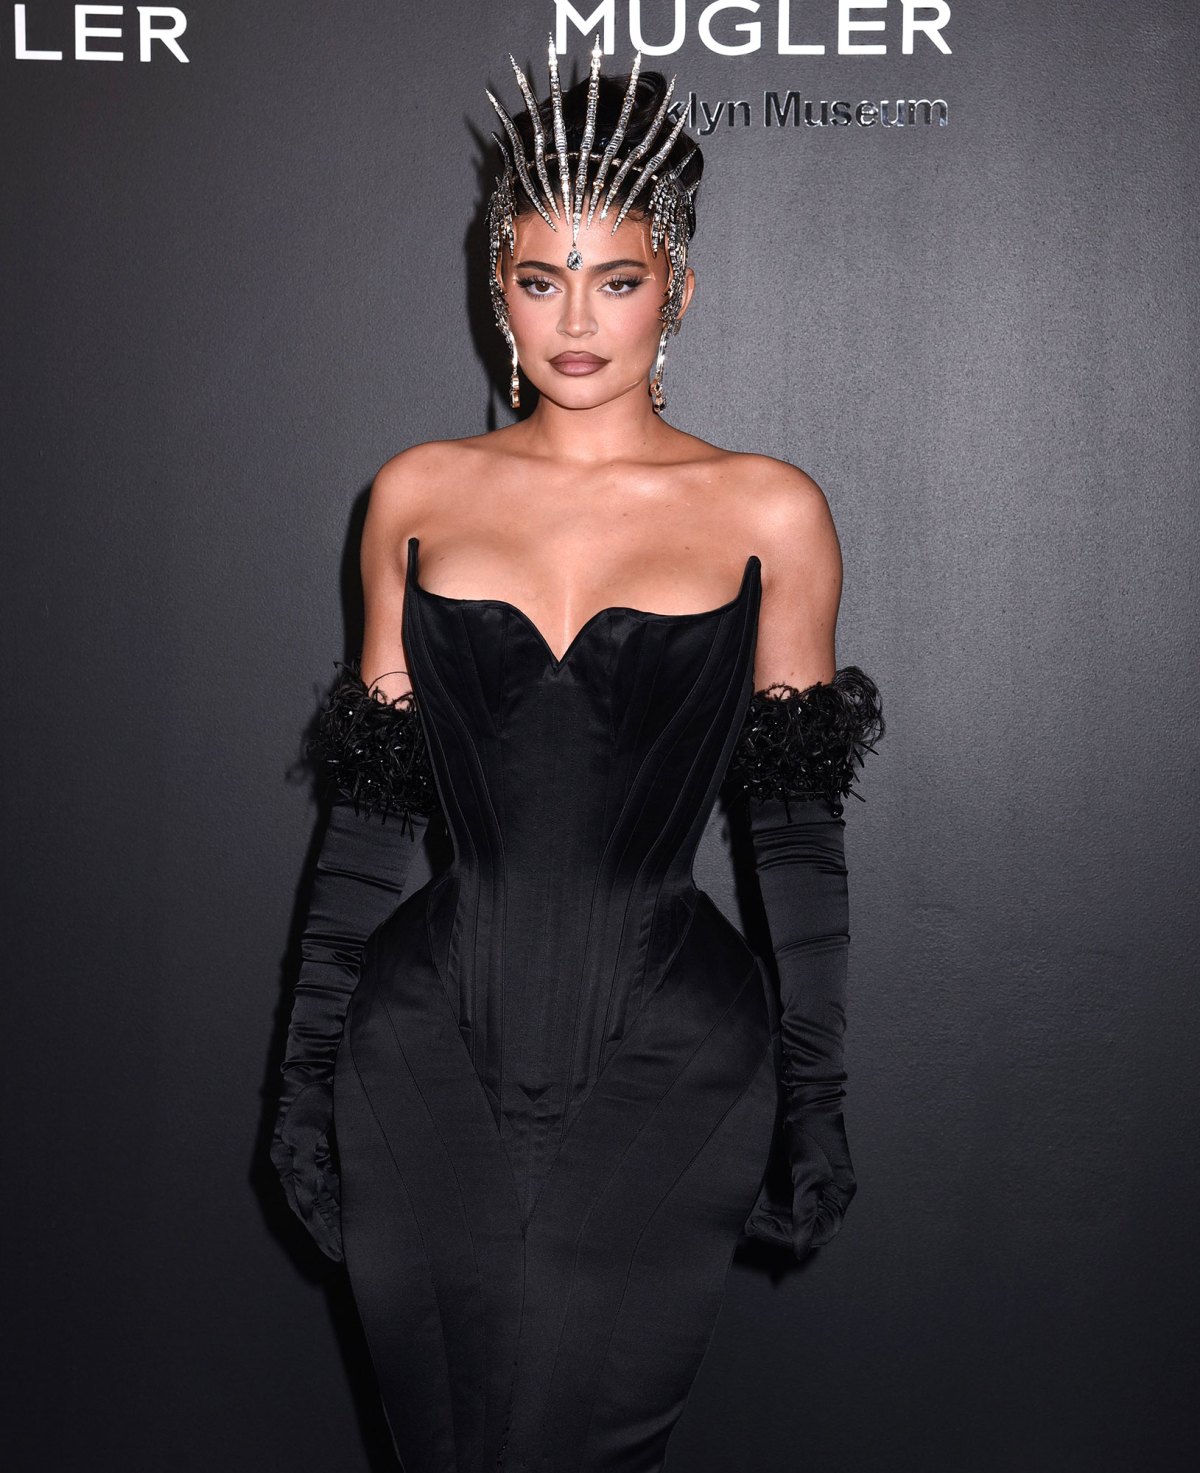 Kylie Jenner Goes Sheer in Mugler Dress at CFDA Fashion Awards